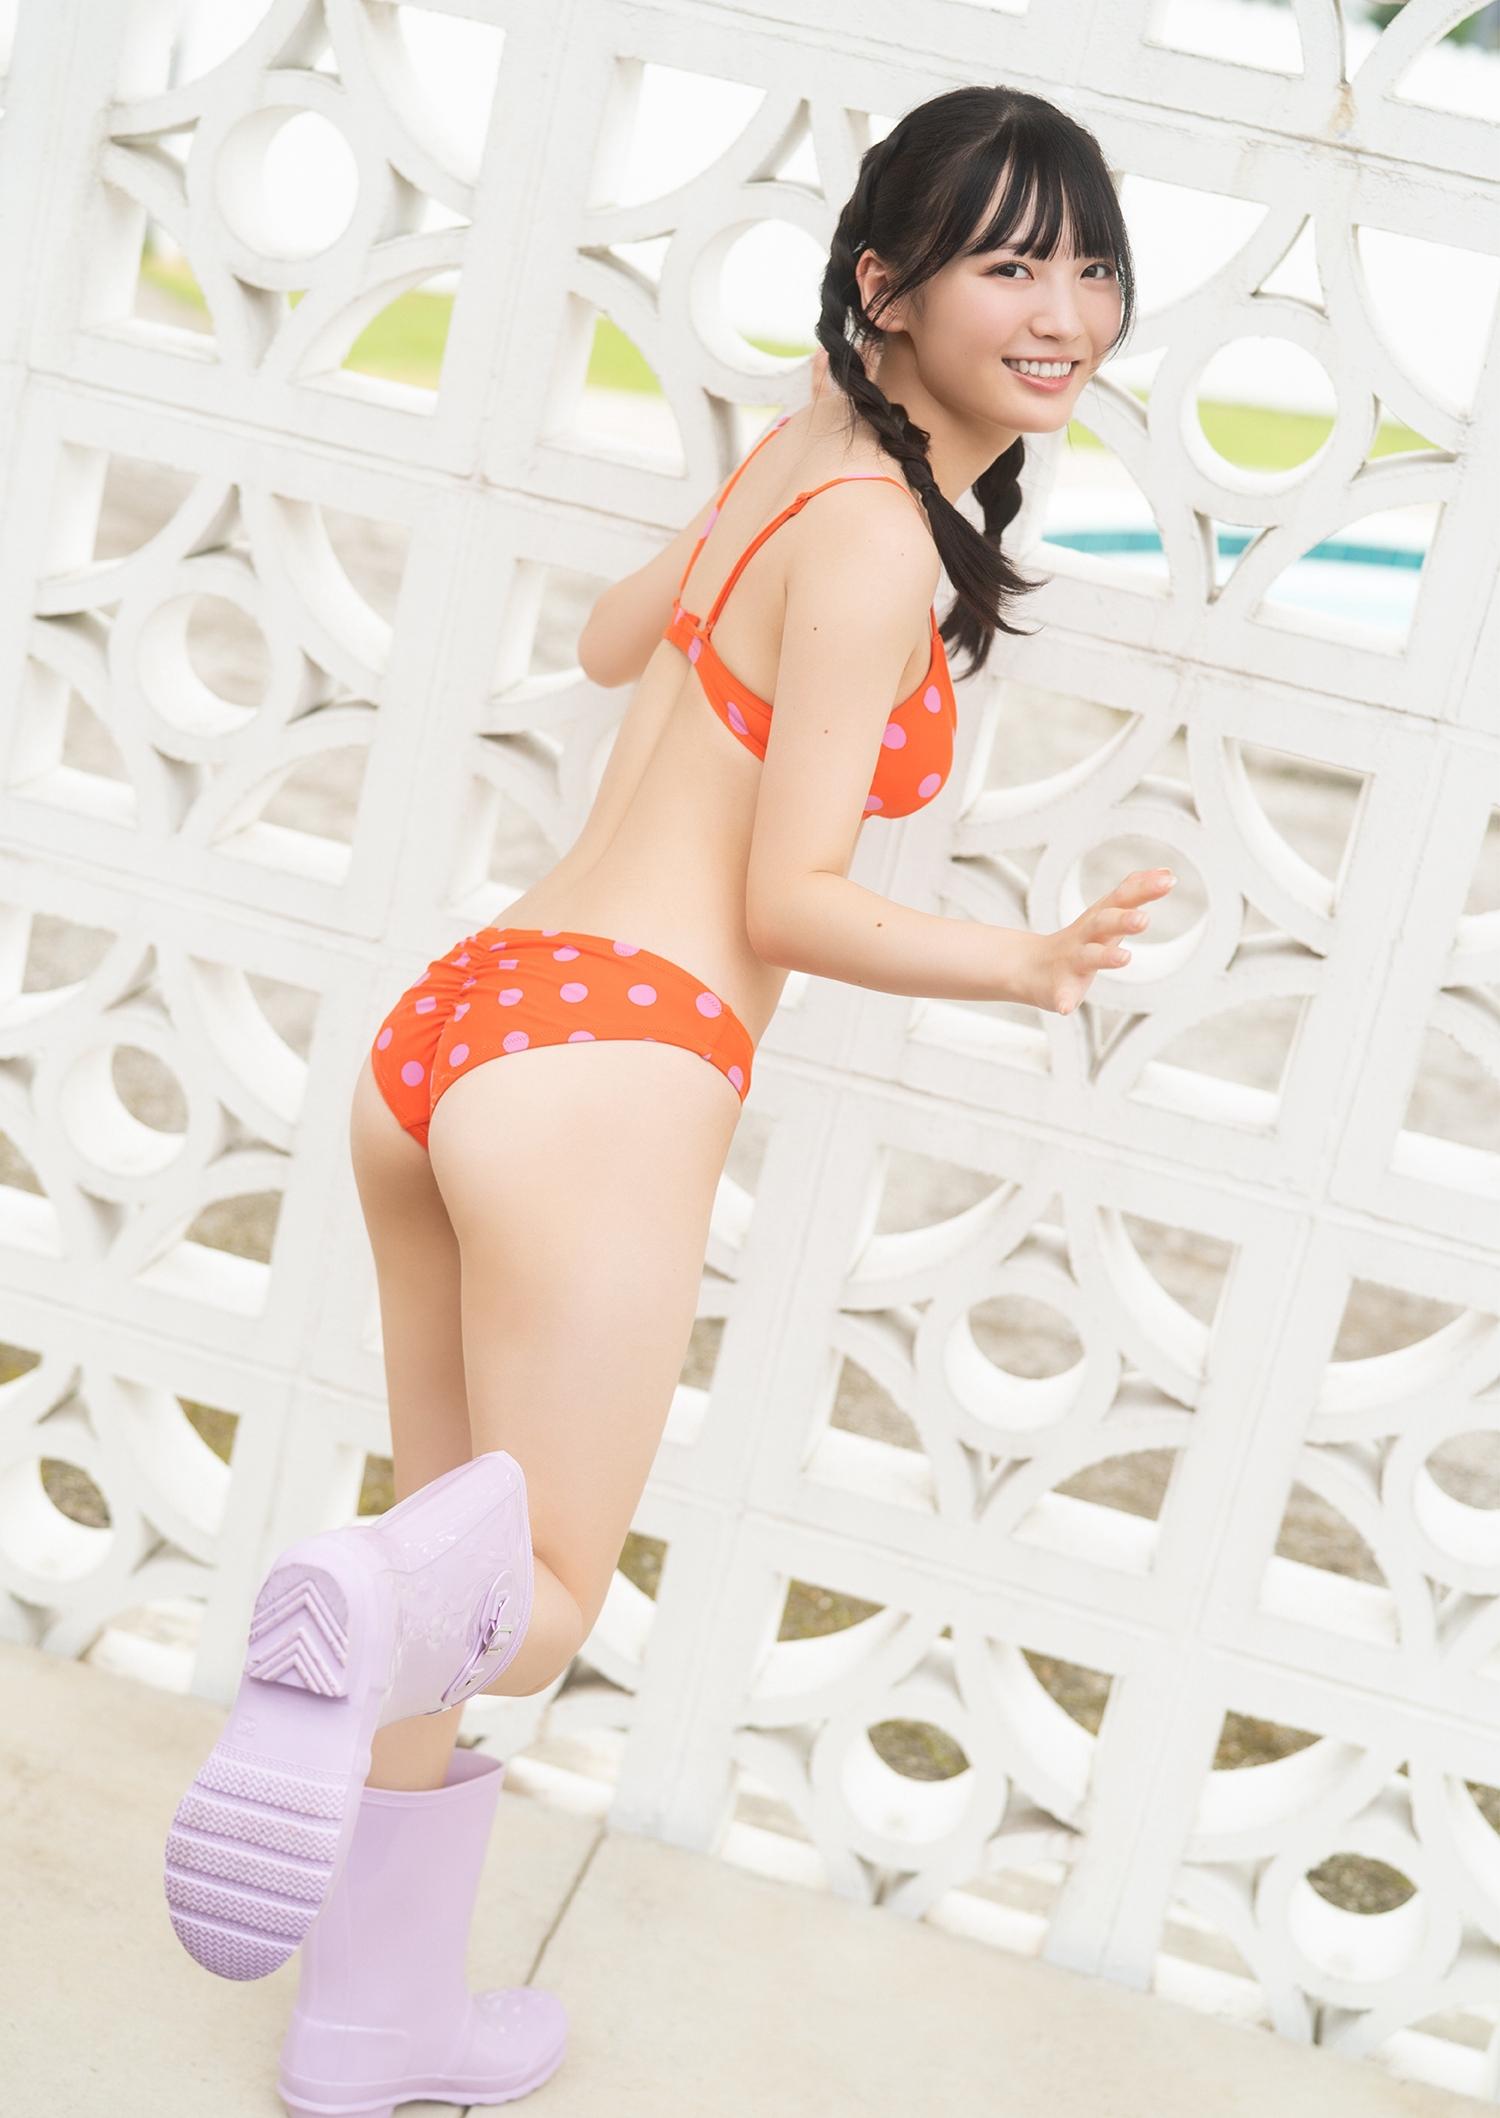 由良ゆら(よーよーよー)写真集「“Azatoi”Summer Girl」比基尼泳装与蕾丝内衣诱惑,0032